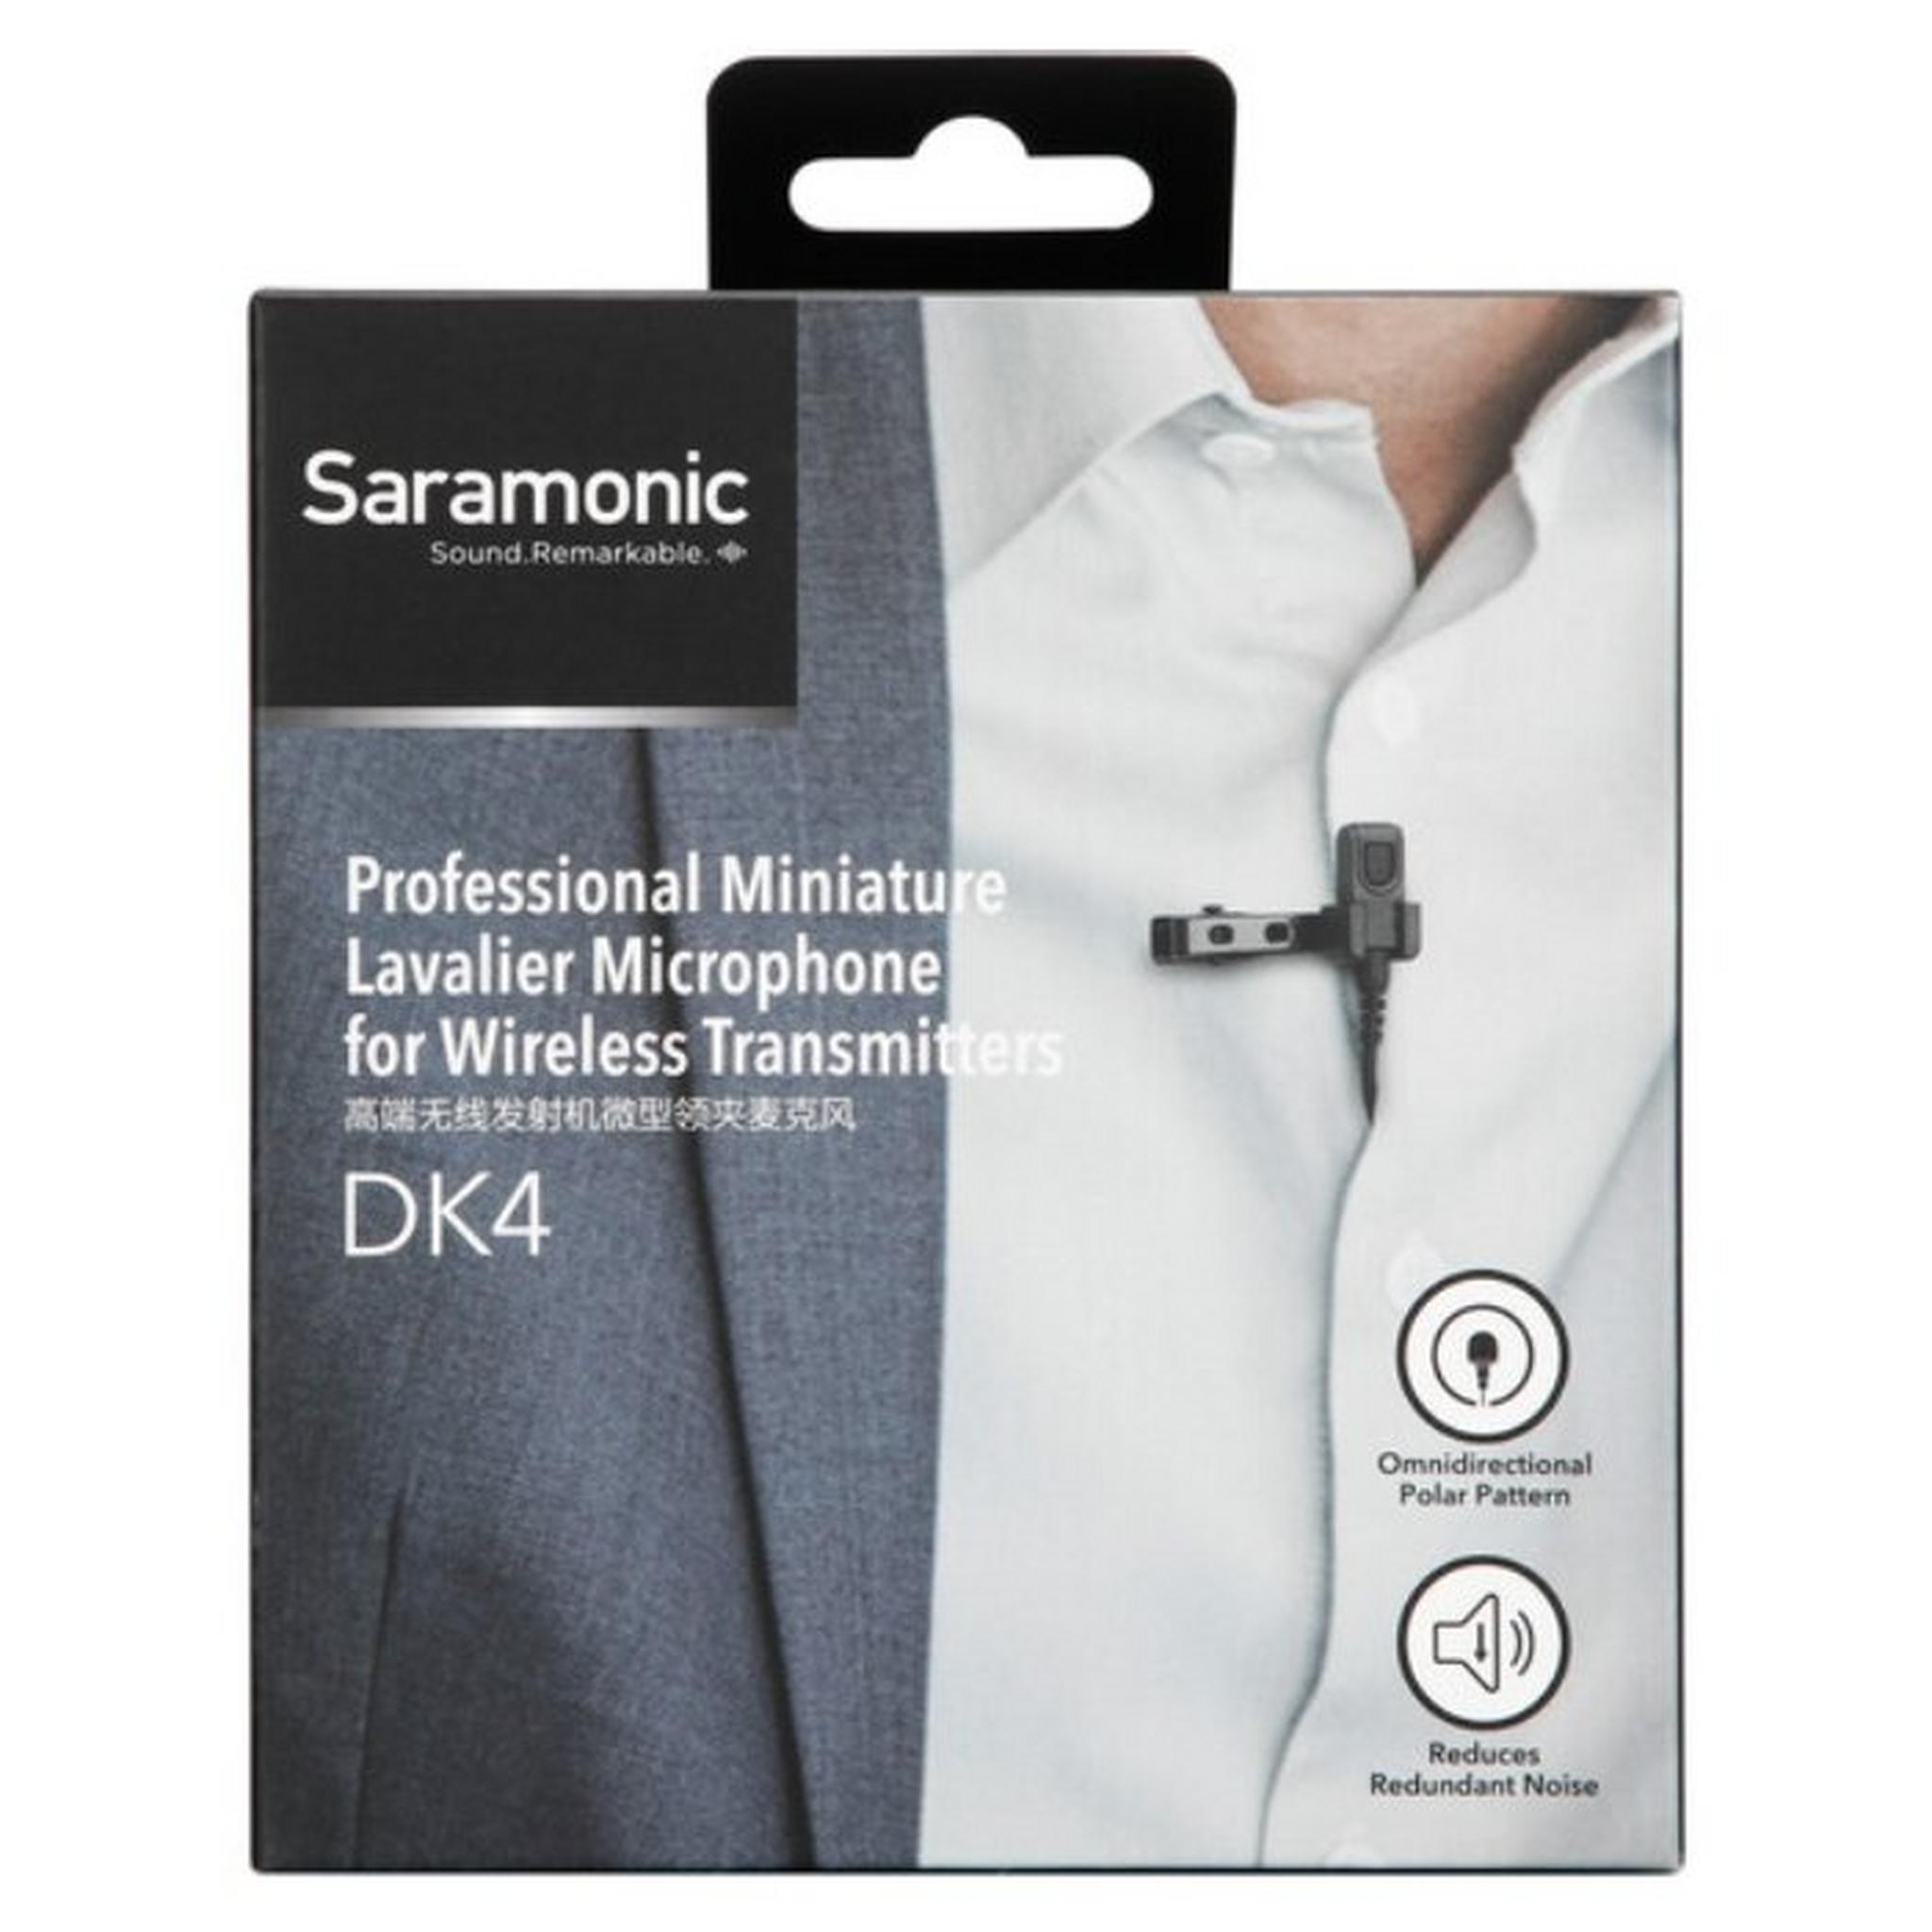 موصل ميكروفون احترافي من سارامونيك مقاس 3.5 ملم (DK4A)